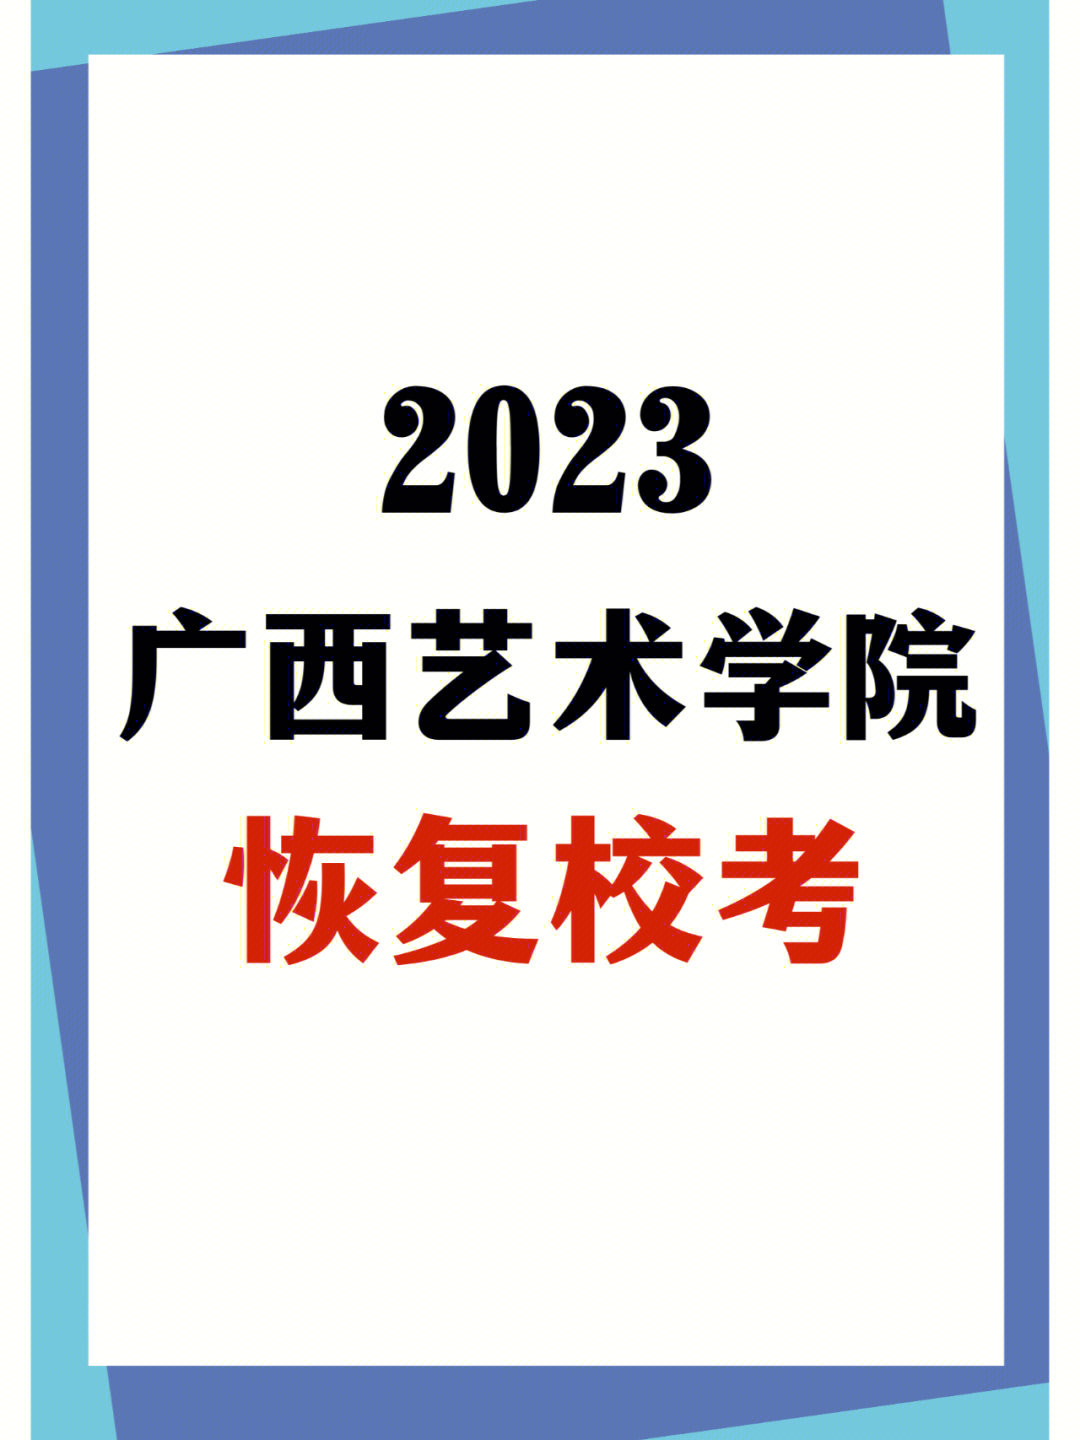 低分美术生福音2023广西艺术学院恢复校考